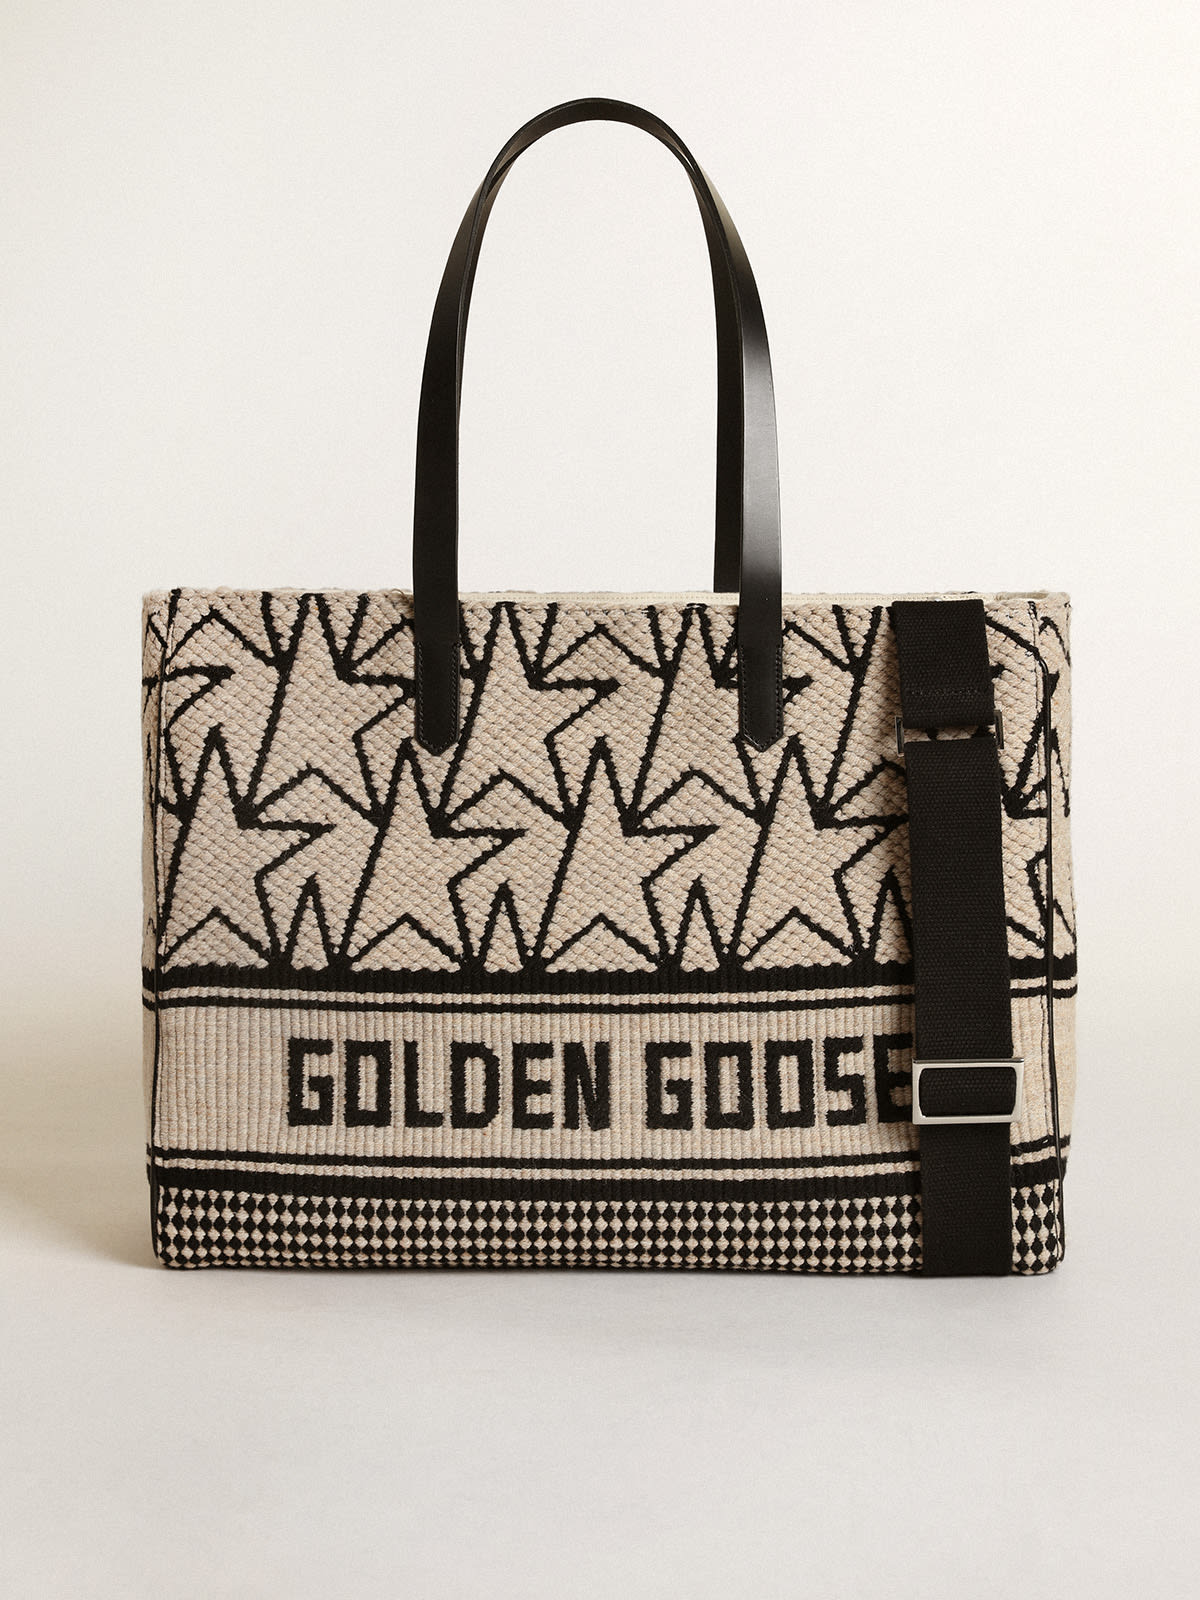 Golden Goose - Sac California Bag East-West en laine jacquard blanc de lait avec monogrammes et inscription Golden Goose noire contrastée in 